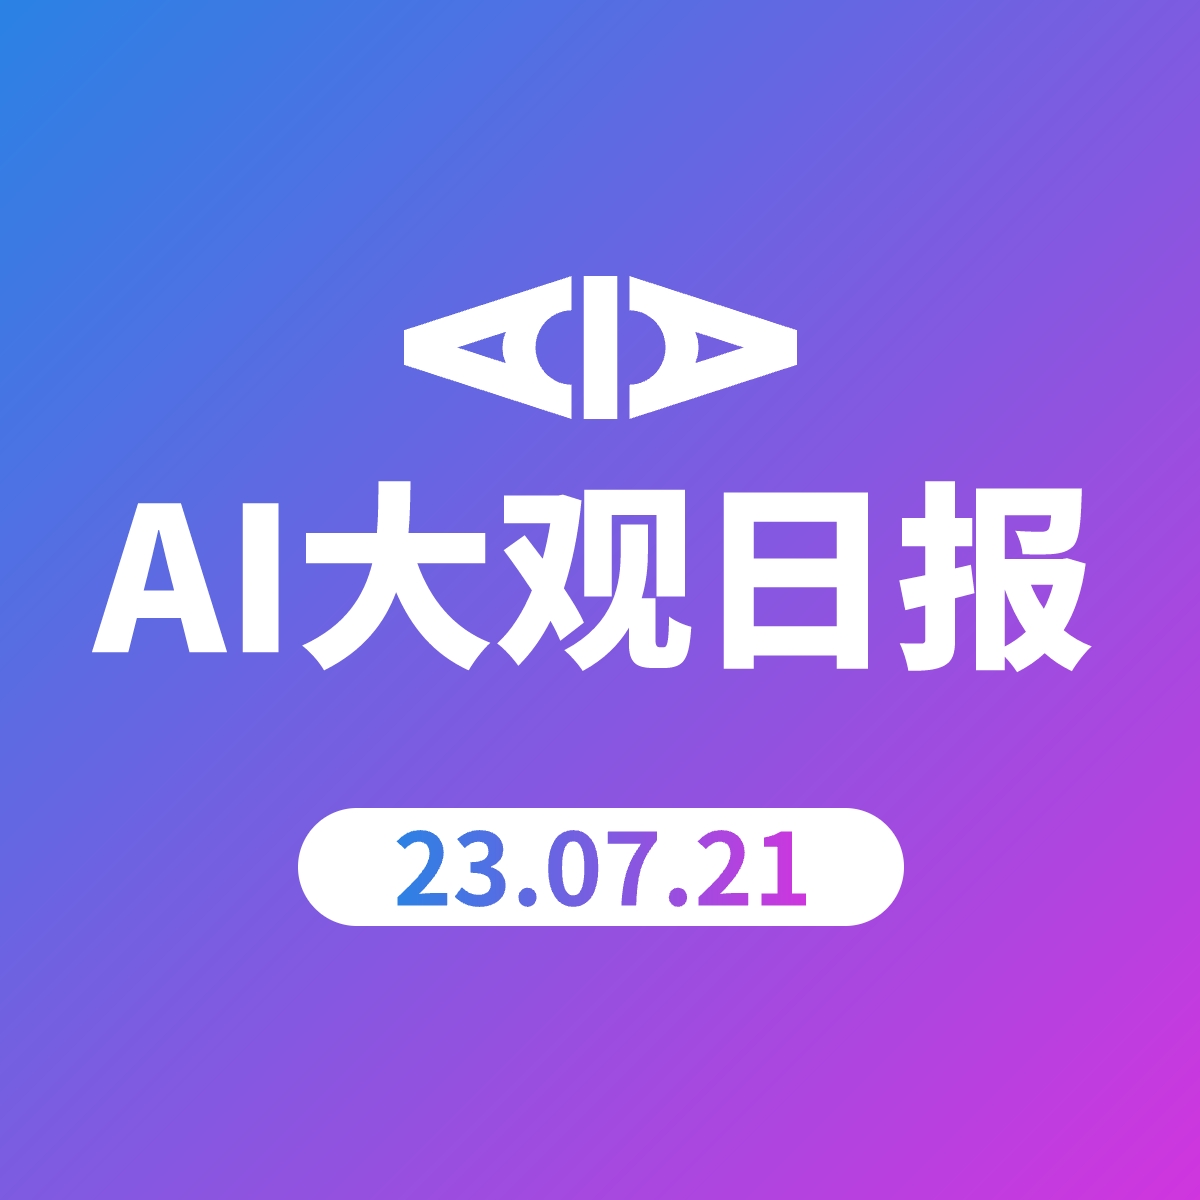 AI大观日报 | 23.07.21